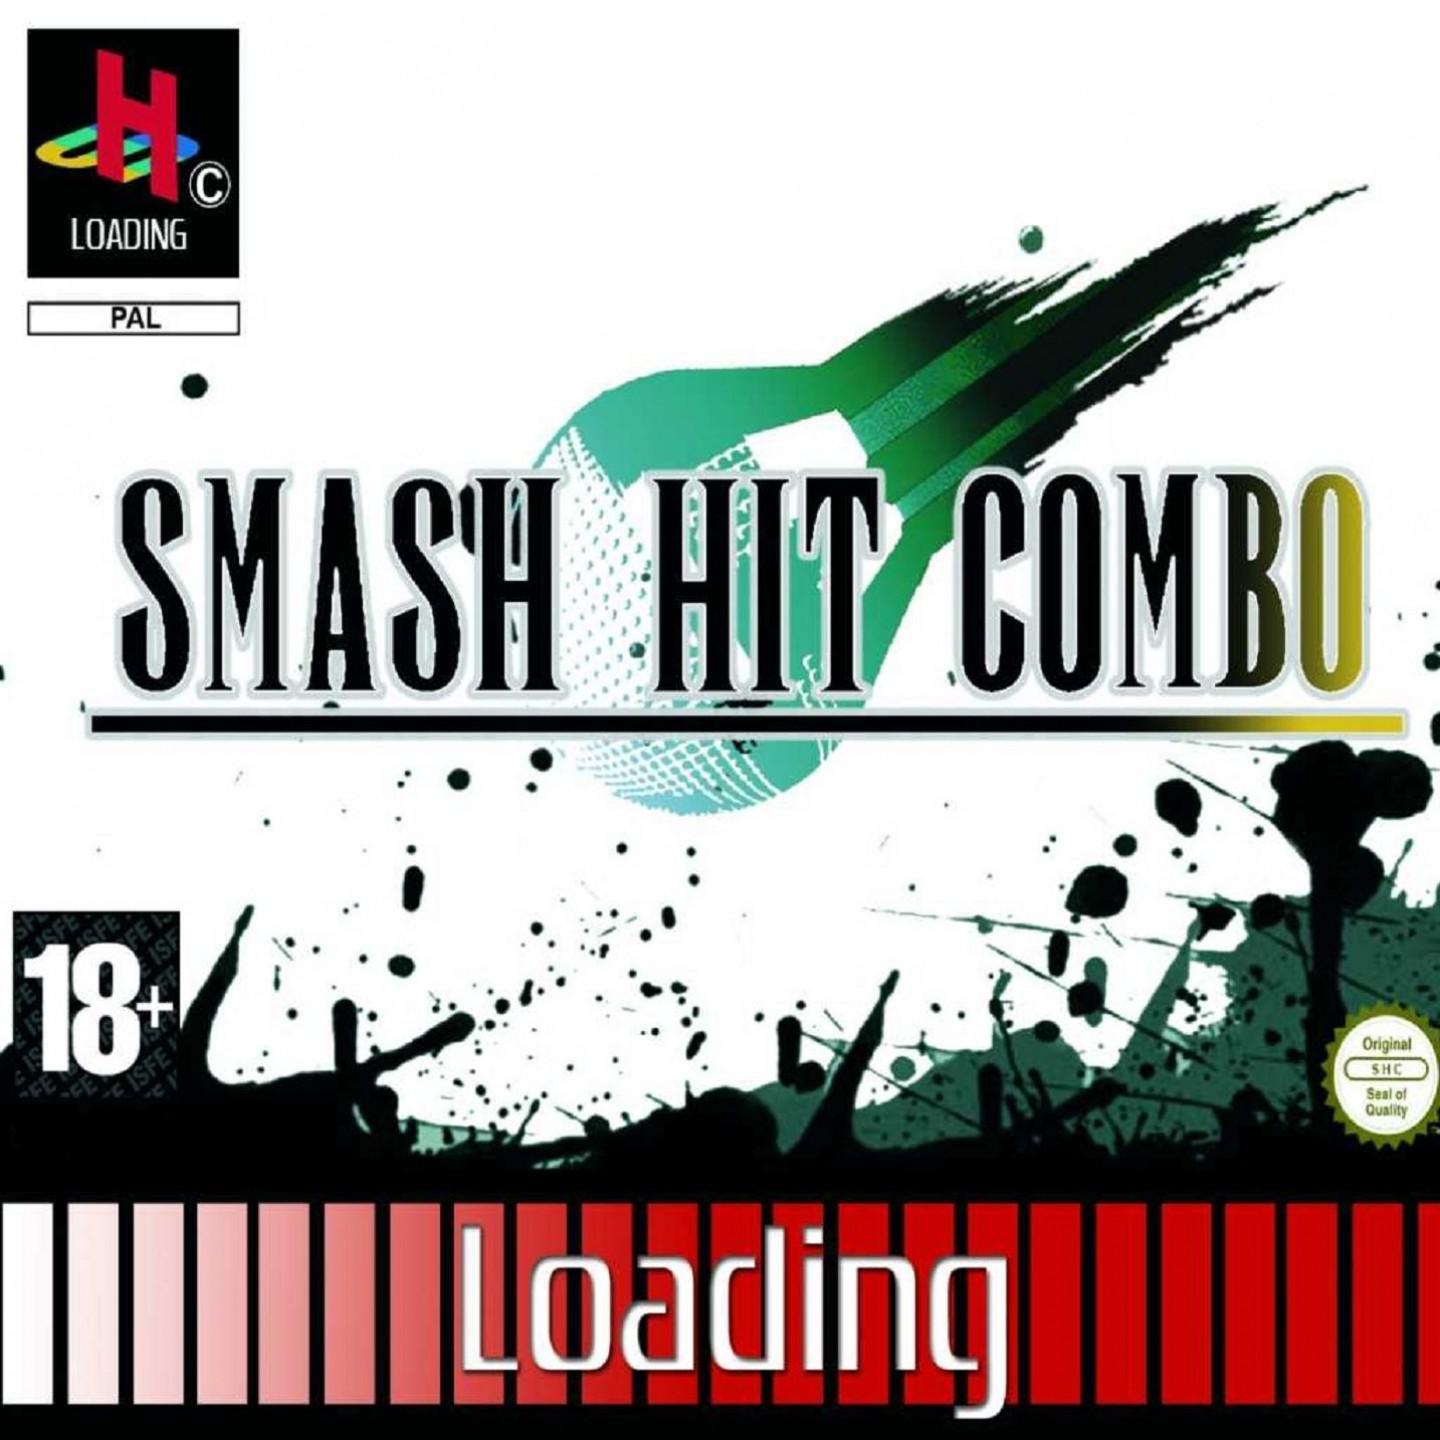 Smash Hit Combo - Point de rupture